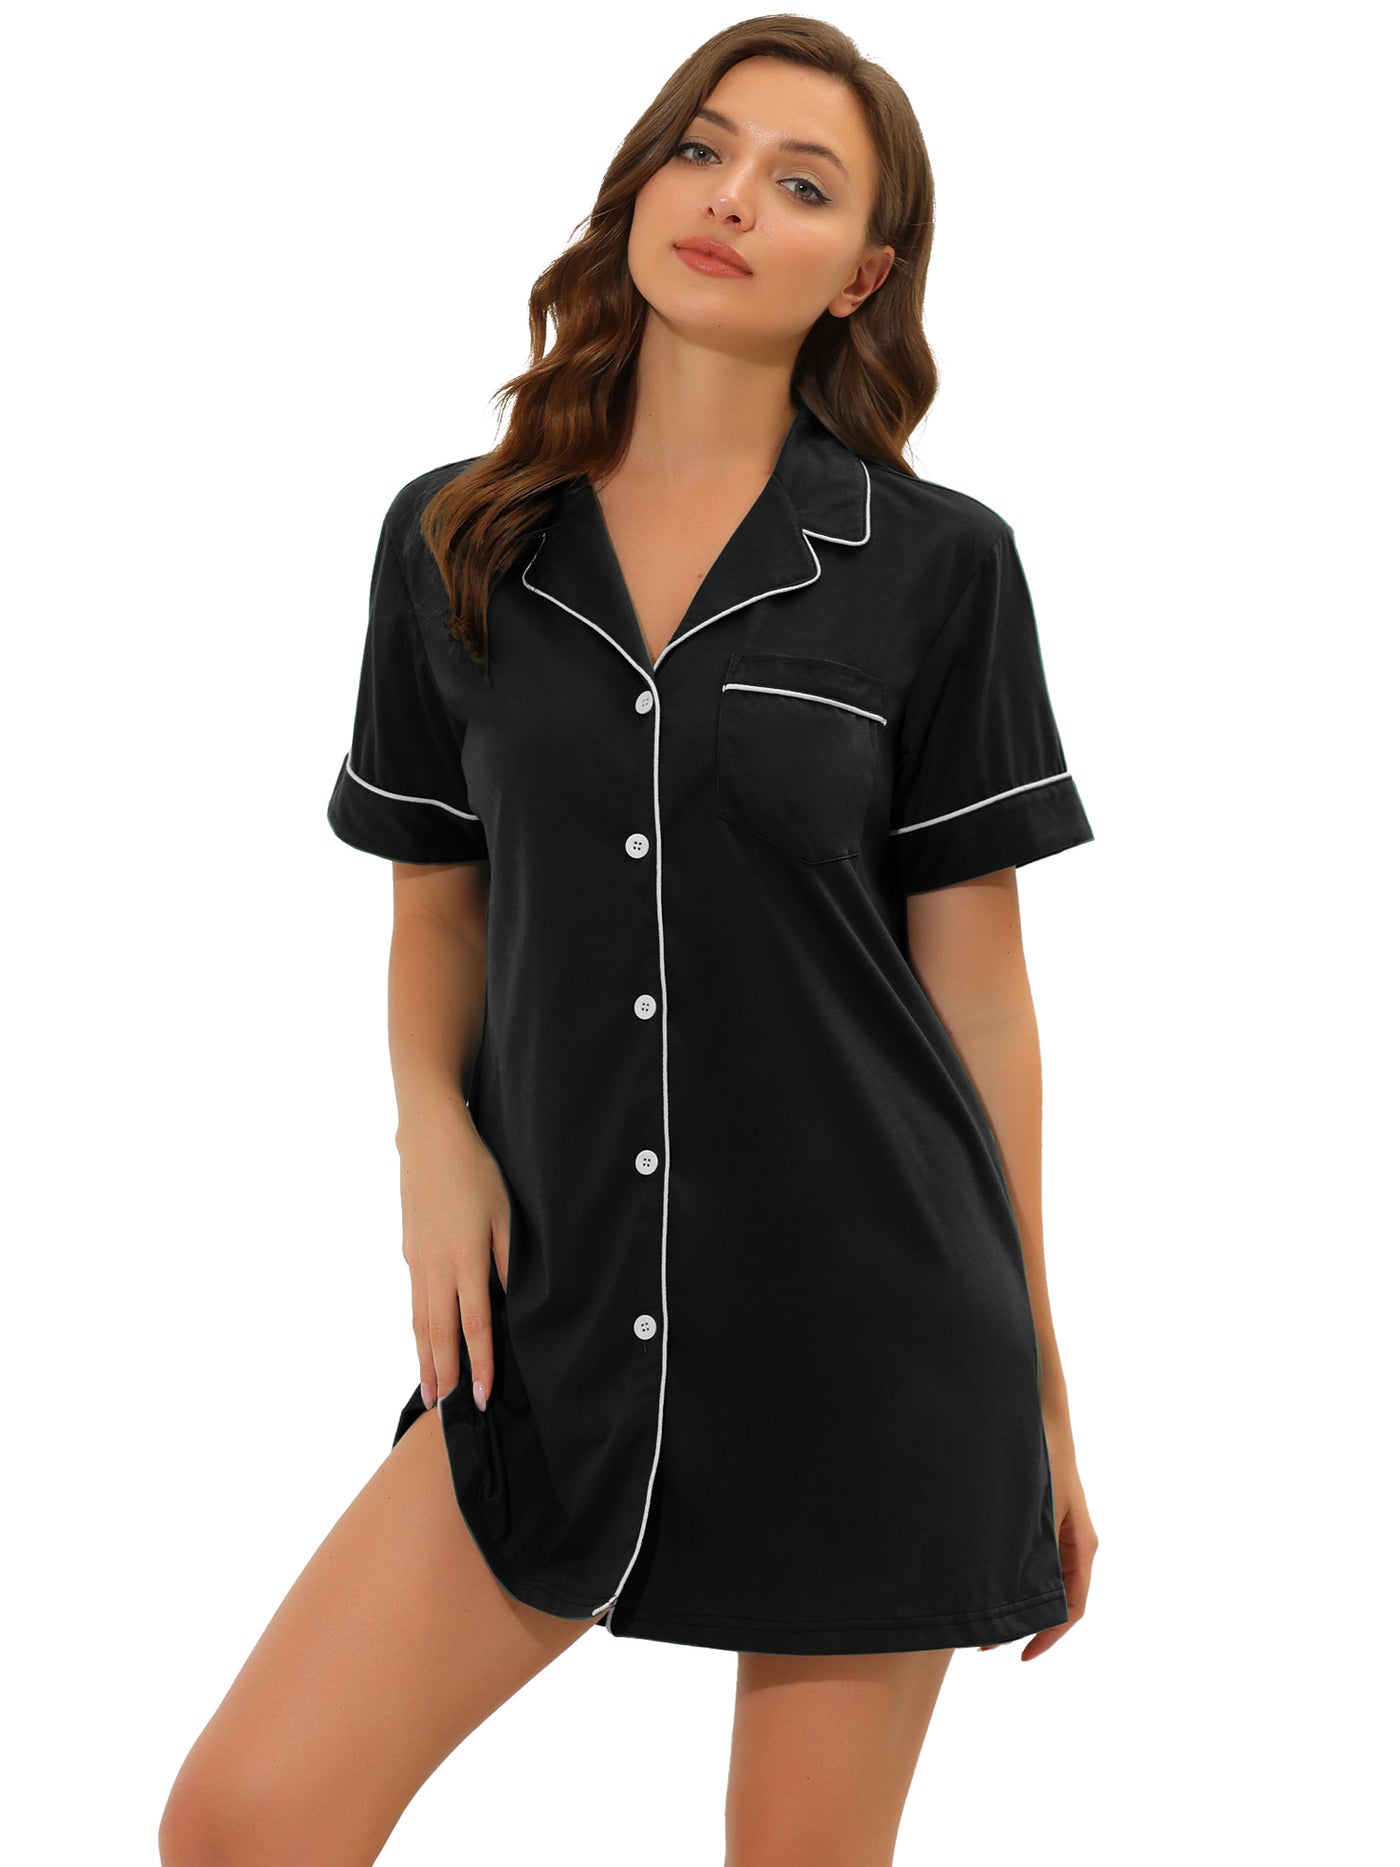 Allegra K Lounge Nightgowns Sleepshirt Pajama Dress Button Down Nightshirt